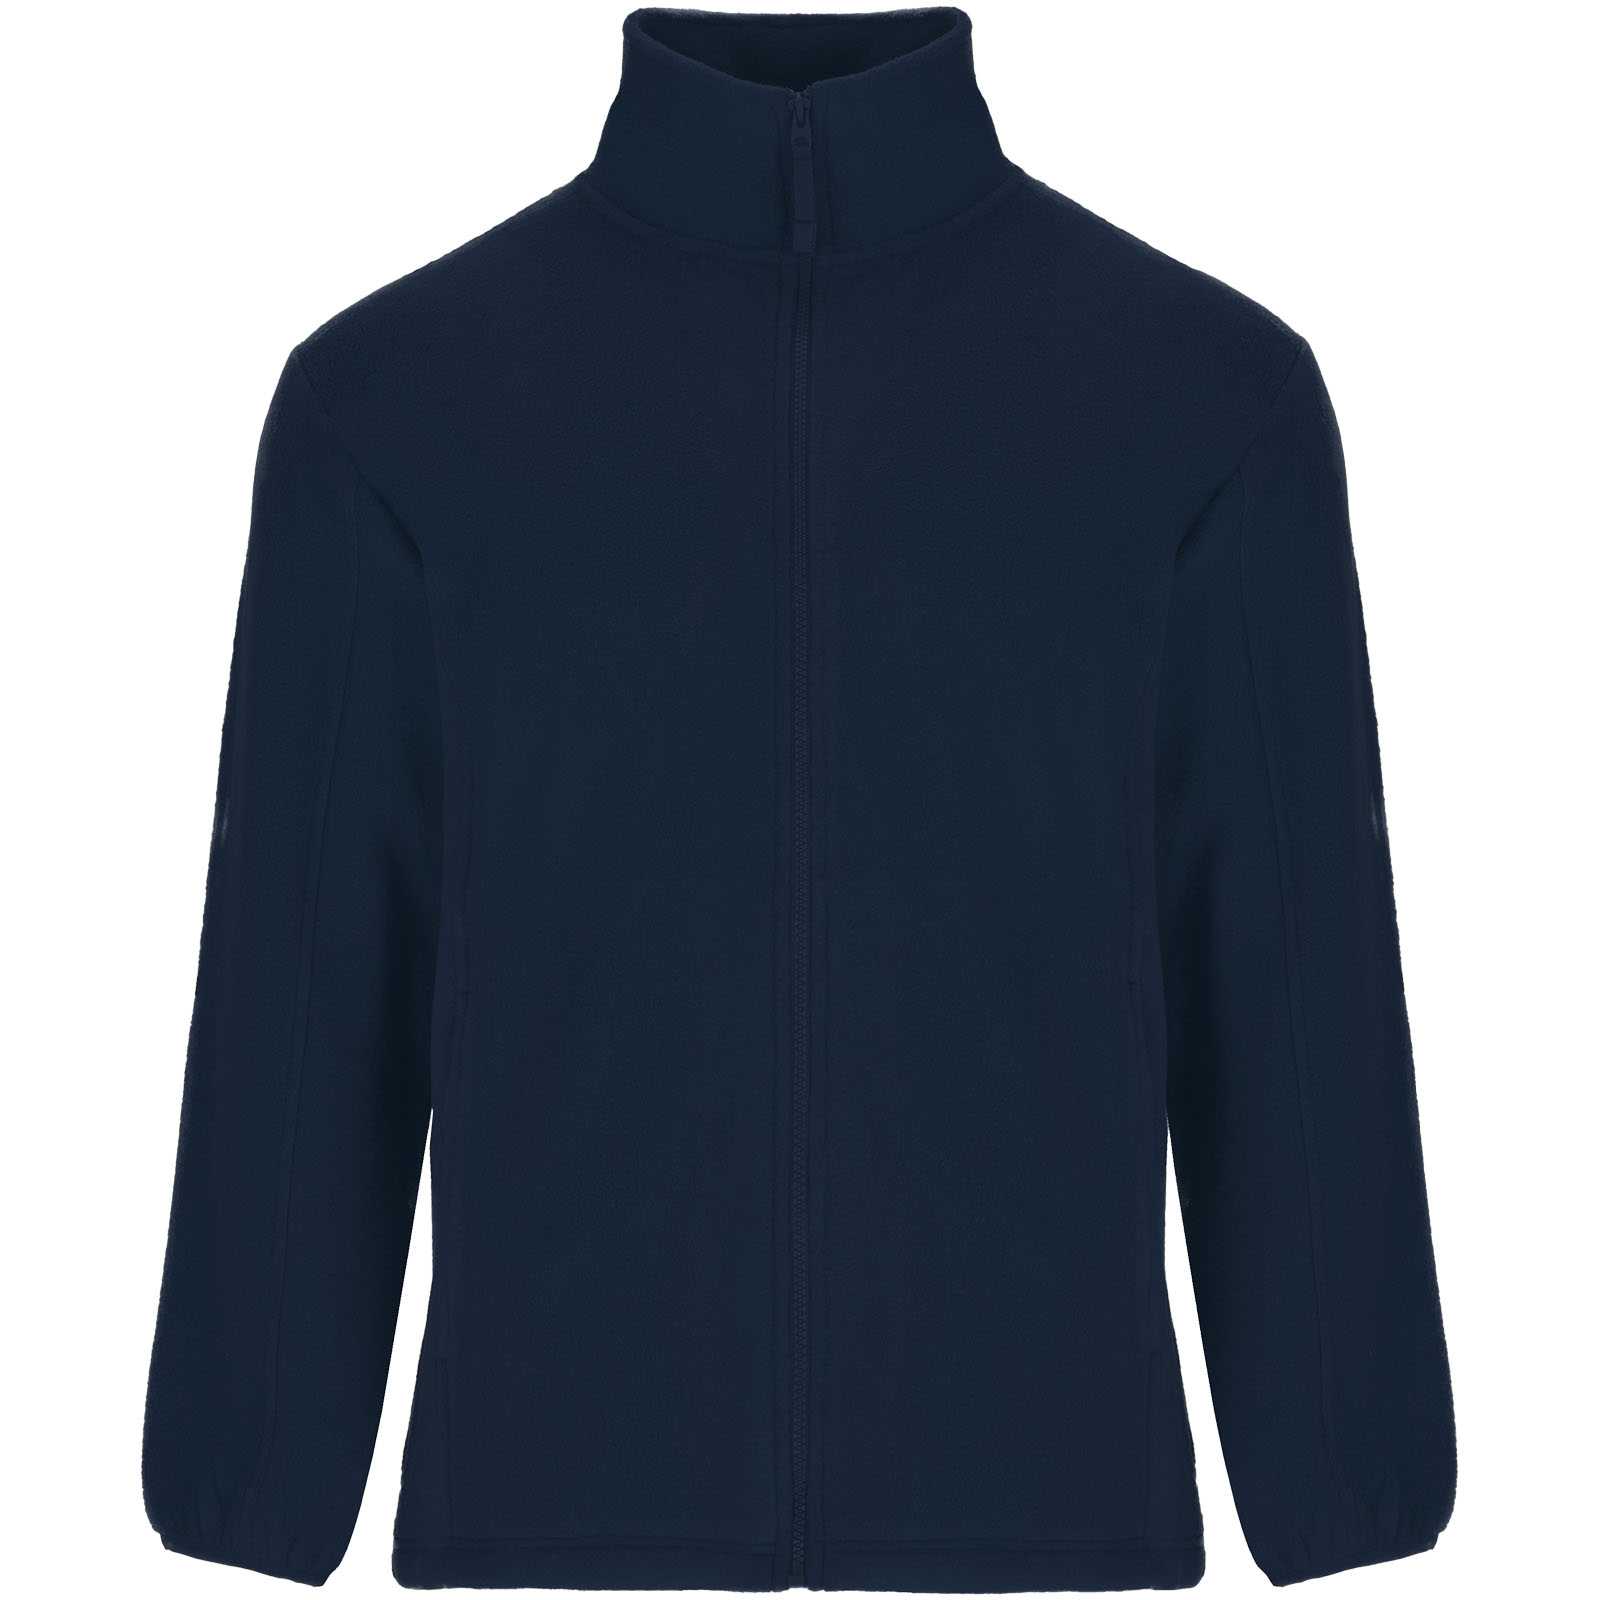 Advertising Fleece - Artic men's full zip fleece jacket - 0